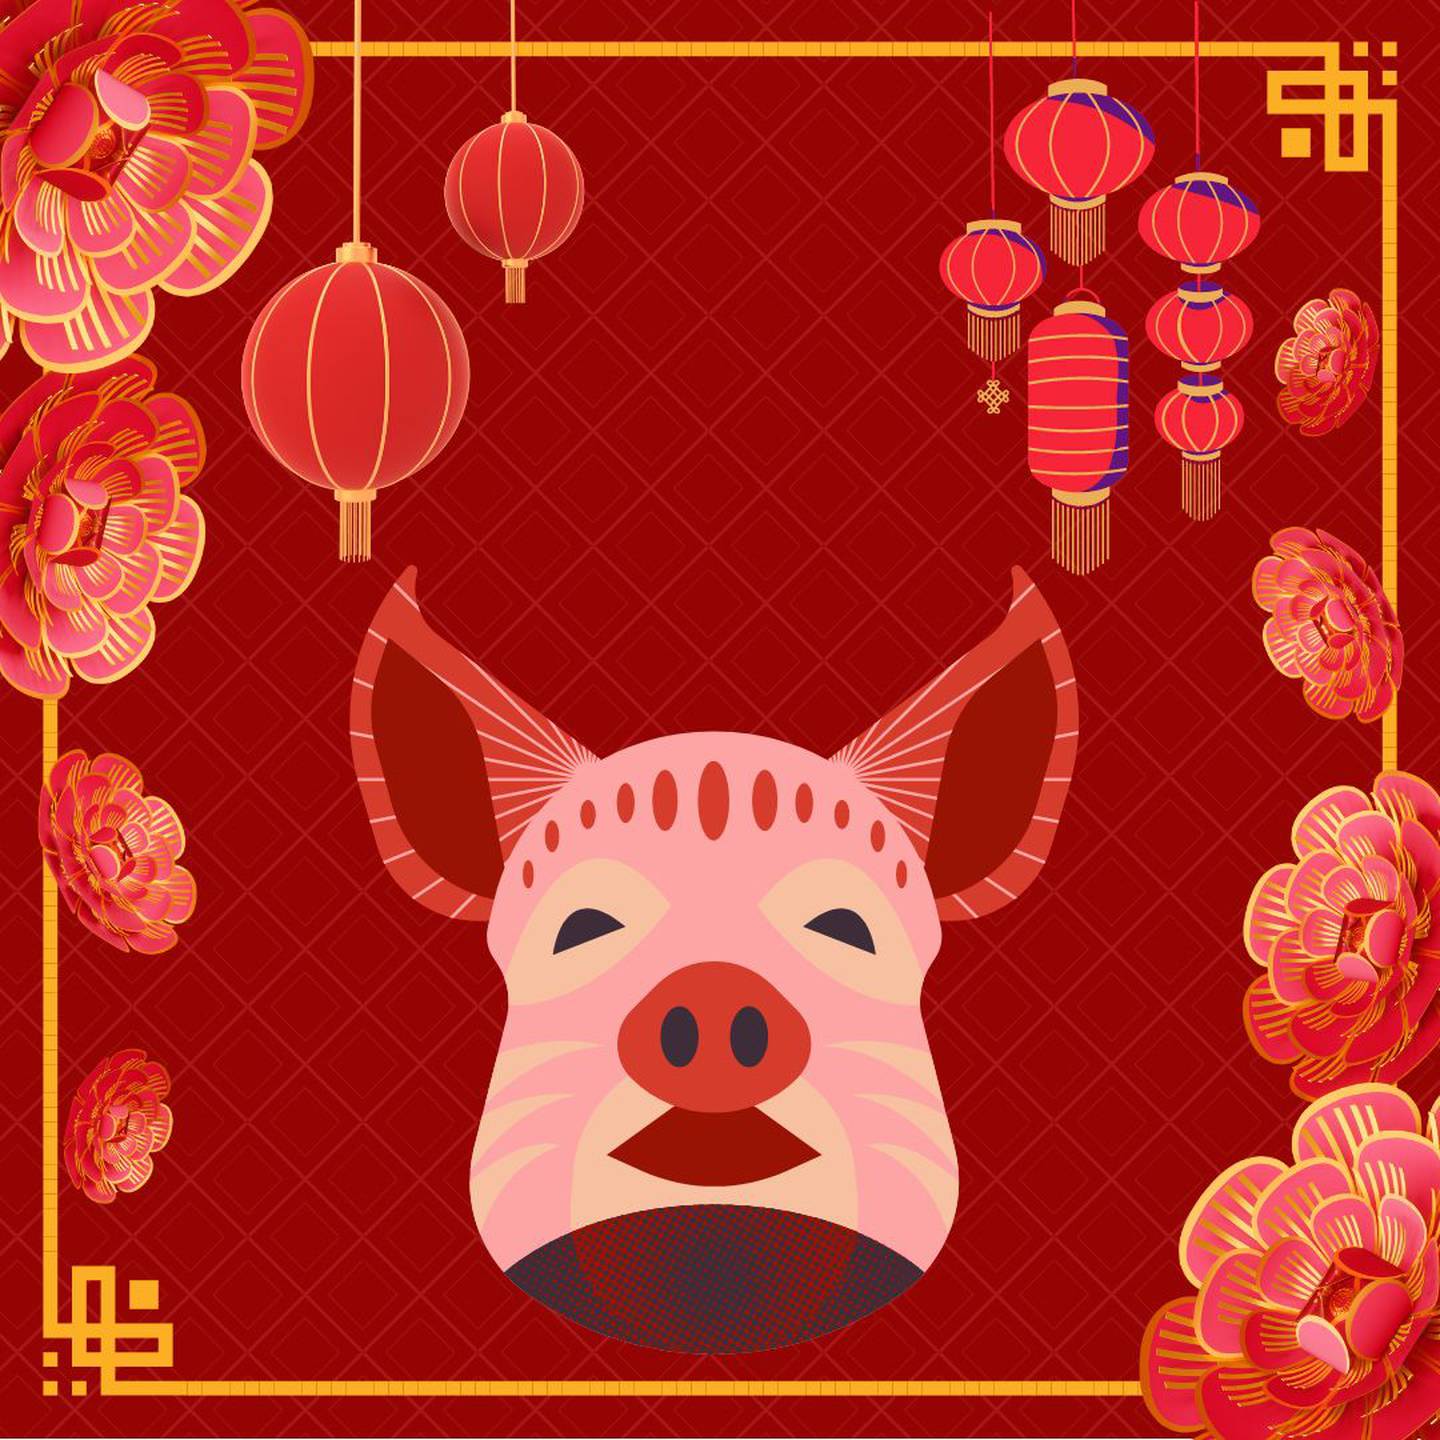 Caricatura de un cerdo sobre un fondo rojo con motivos decorativos orientales